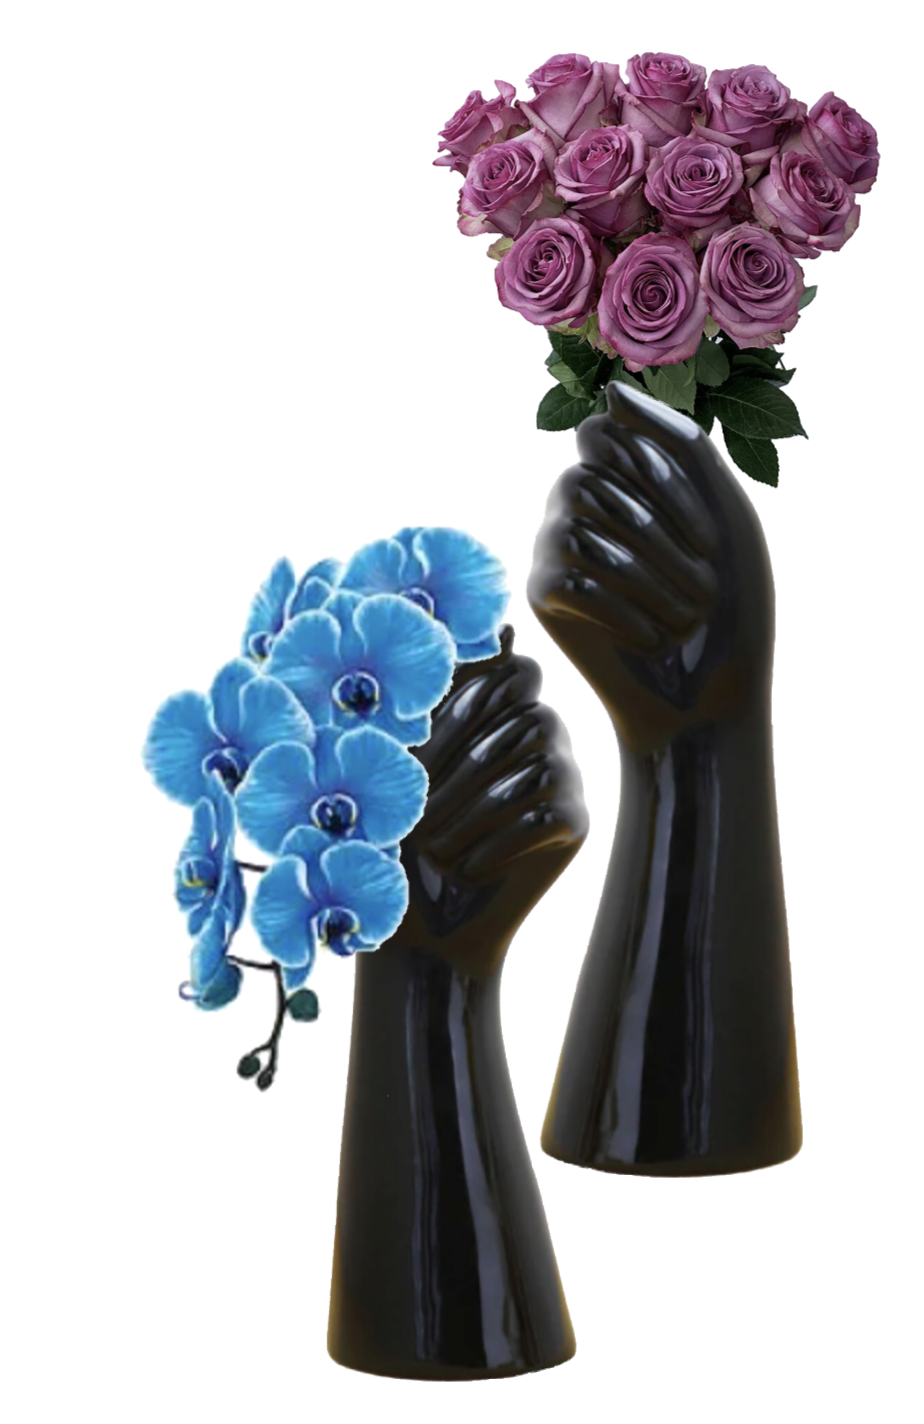 Ceramic Hand Shape Vase - Black